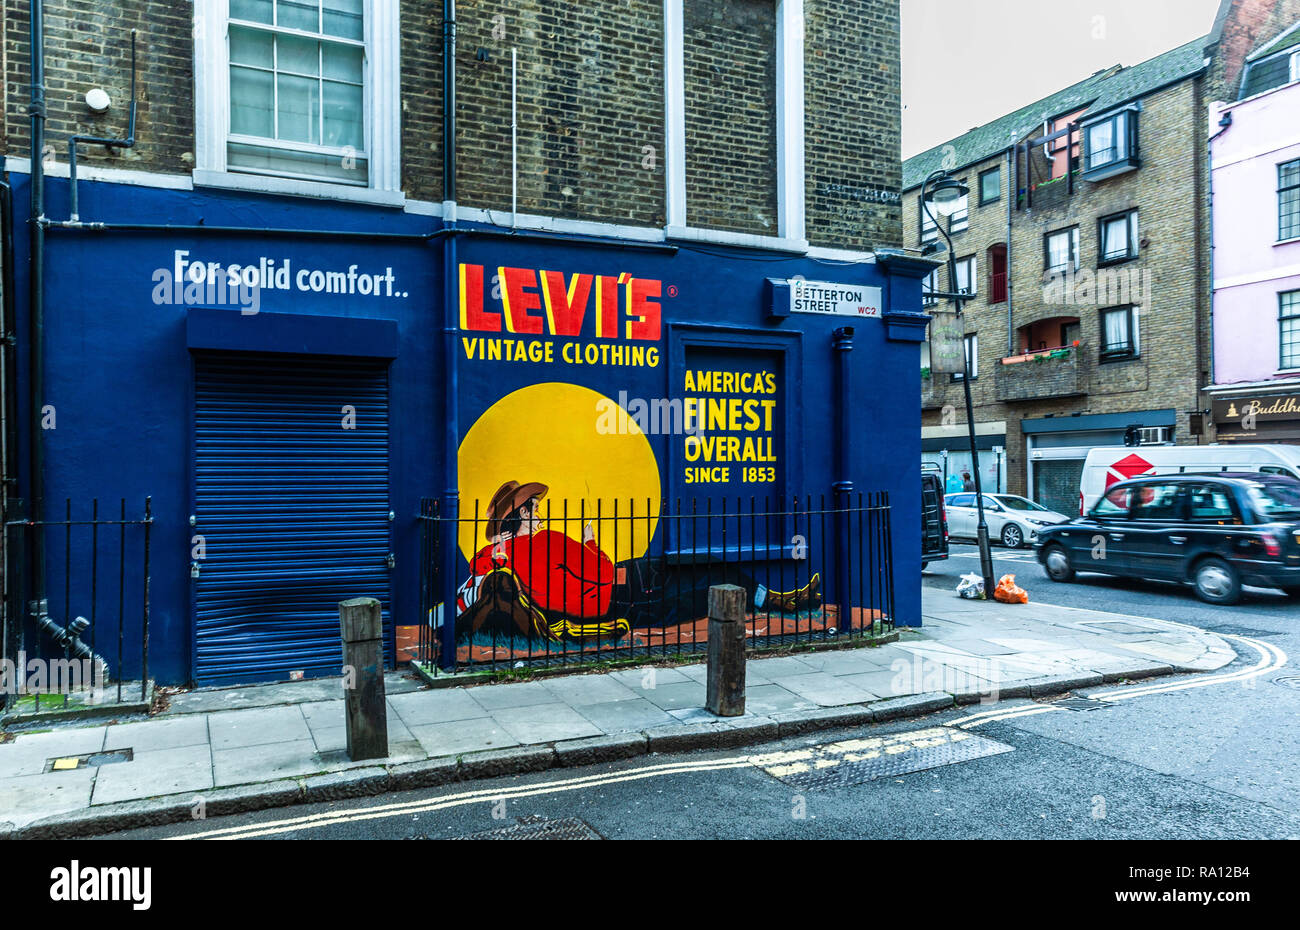 Colourful Levi's billboard, Betterton 